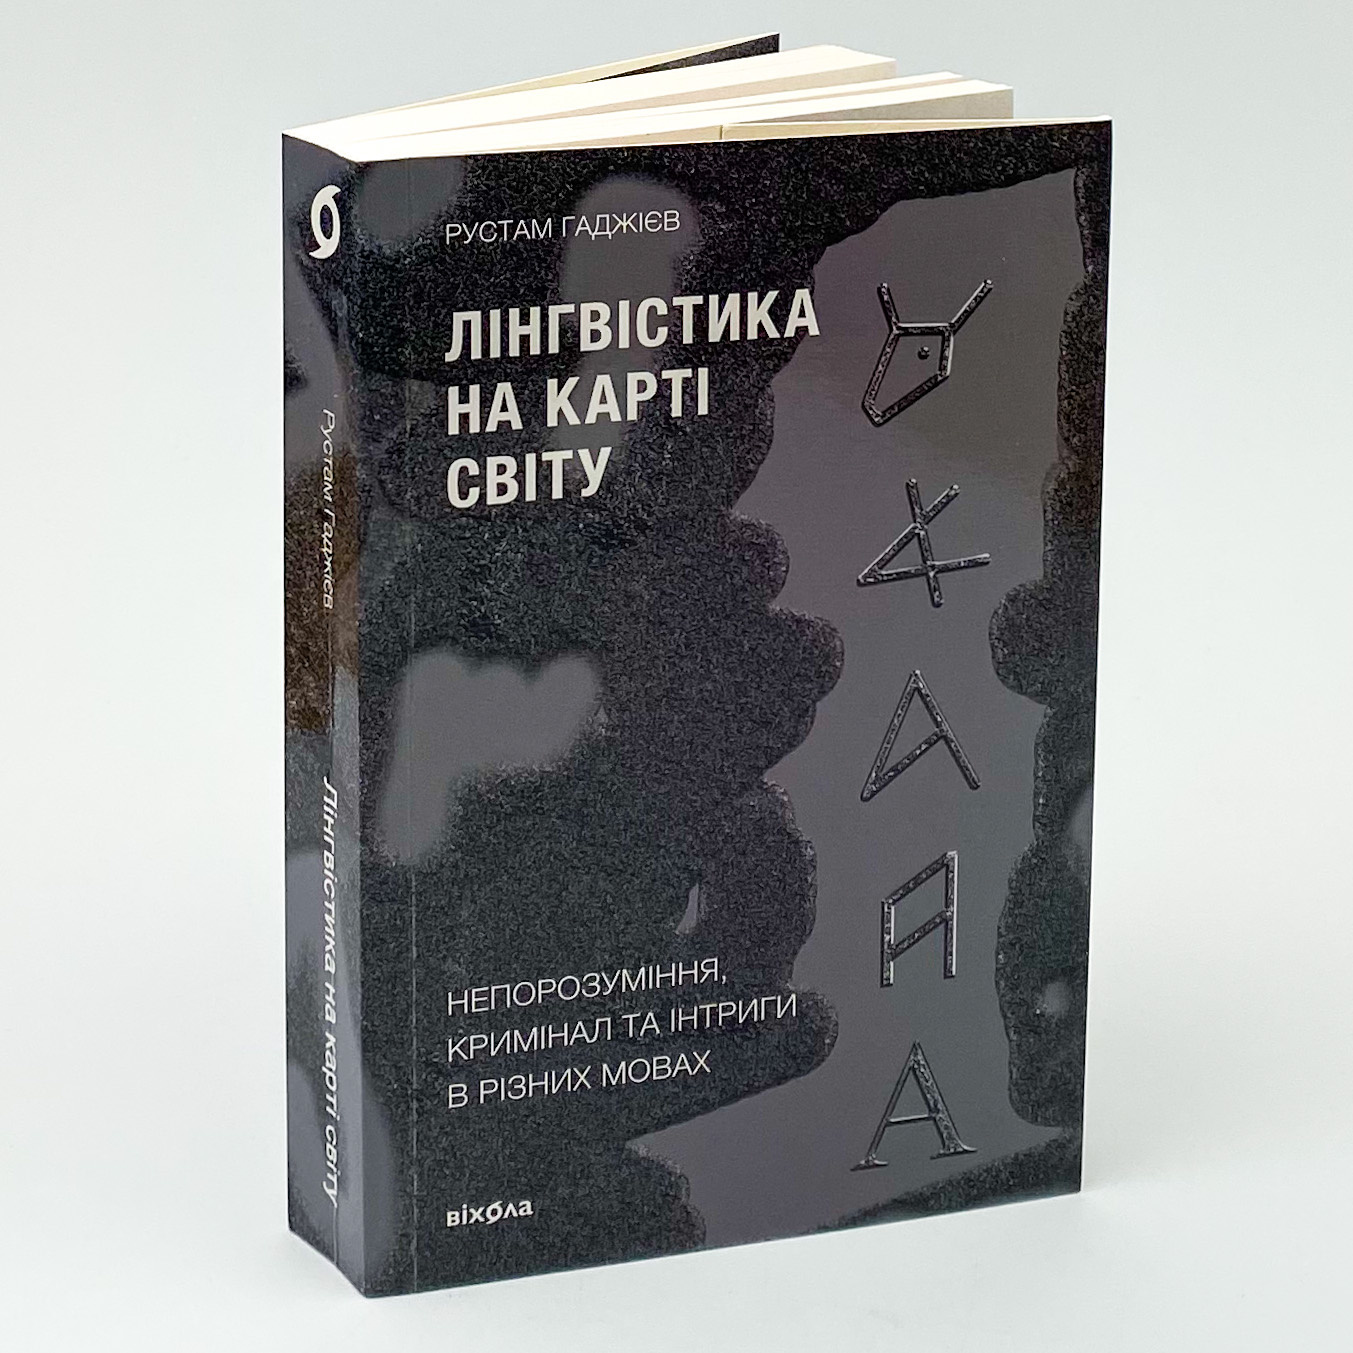 Учебная литература. Автор — Рустам Гаджієв. 